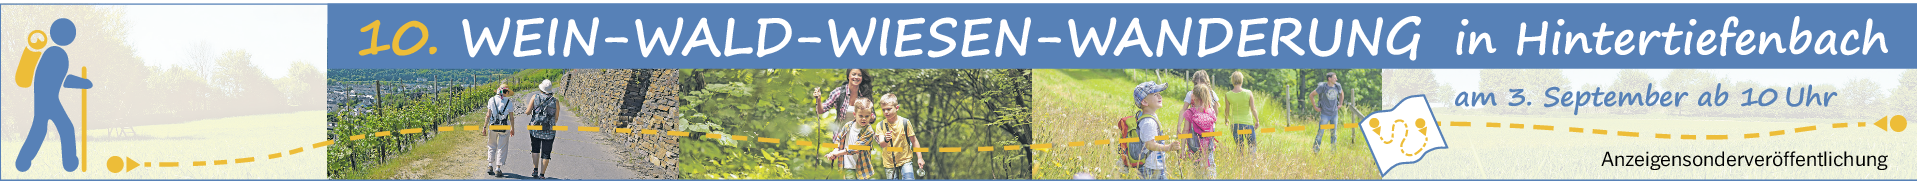 10. Wein-Wald-Wiesen-Wanderung in Hintertiefenbach am 3. September: Um 10 Uhr fällt der Startschuss zur 10. wwww